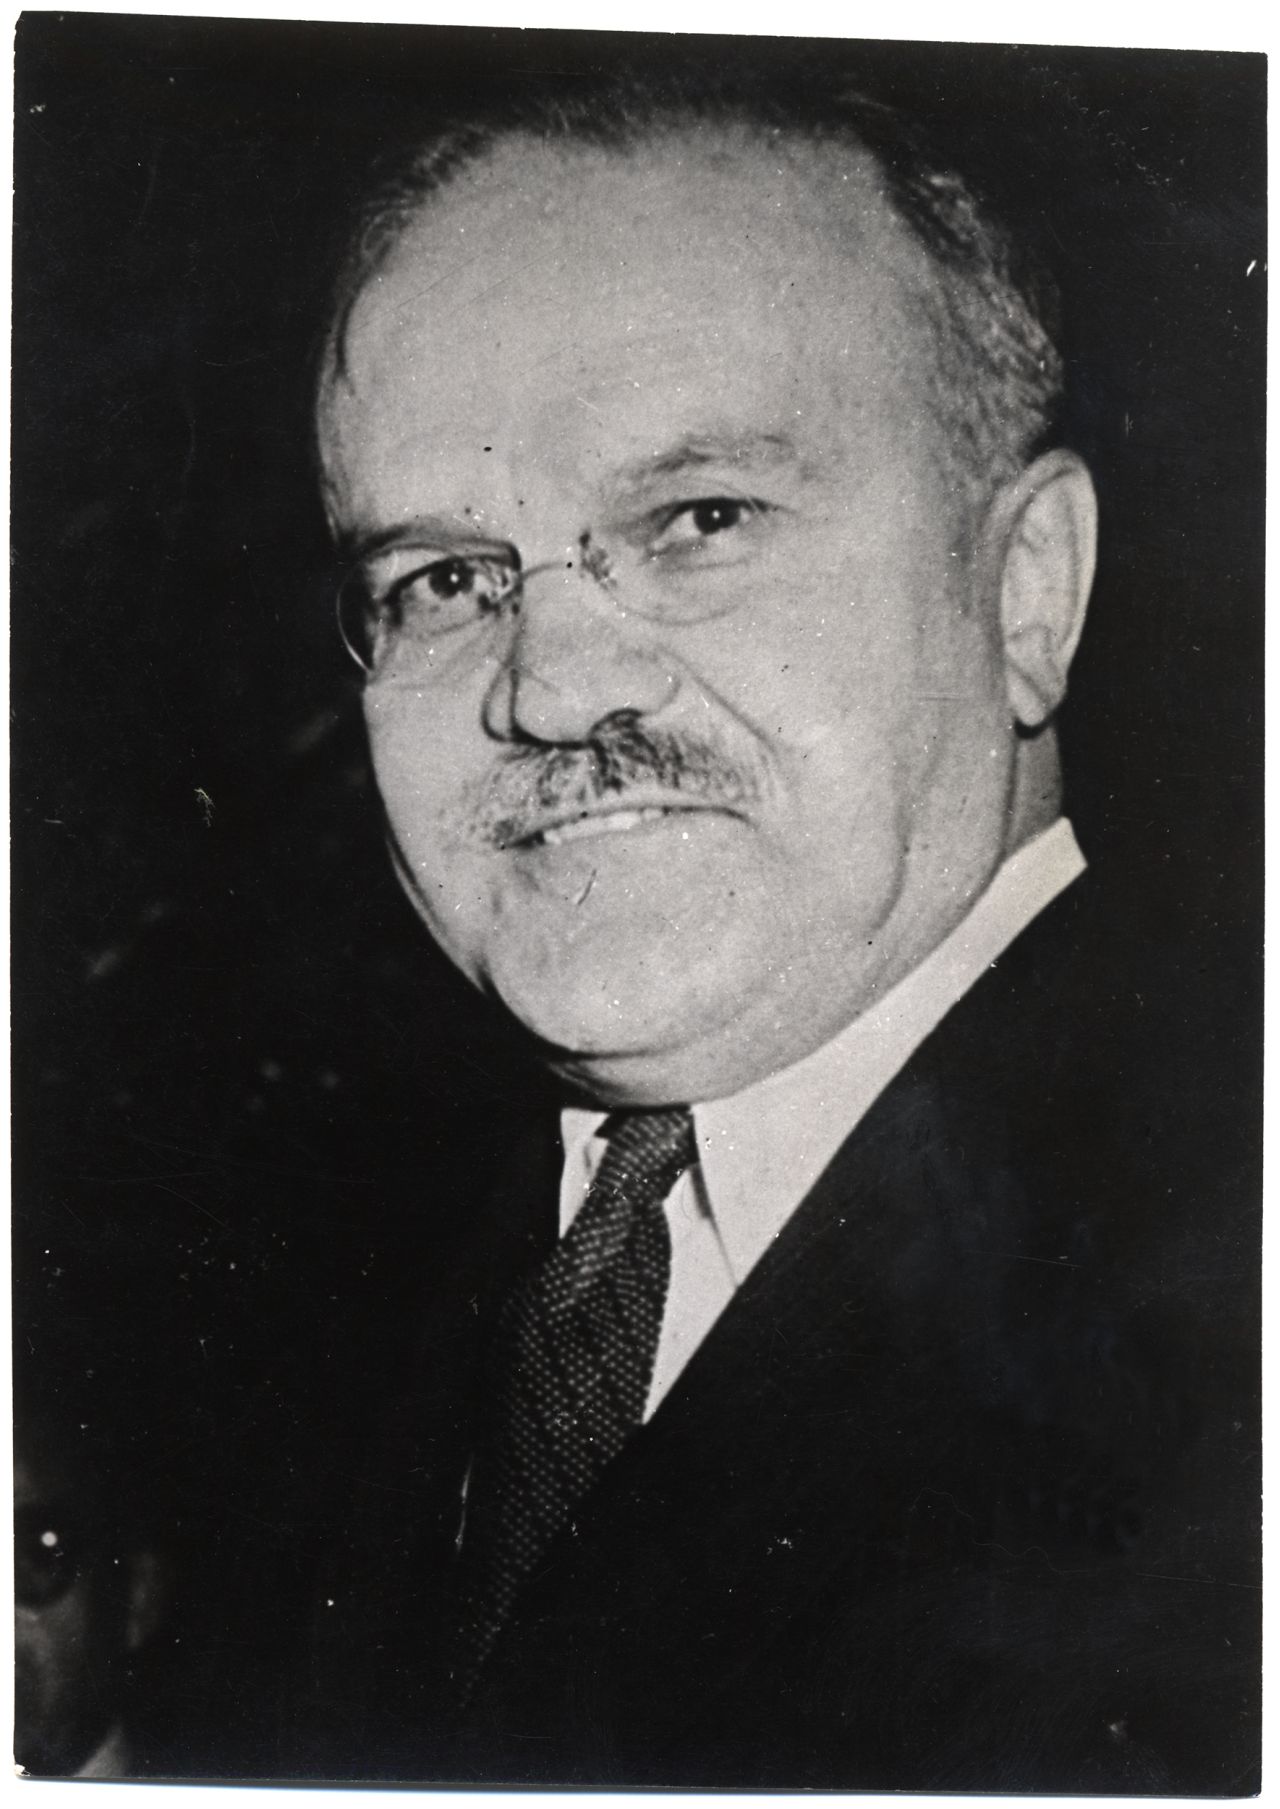 Porträt von Wjatscheslaw M. Molotow, Außenminister der UdSSR (1939-1949)